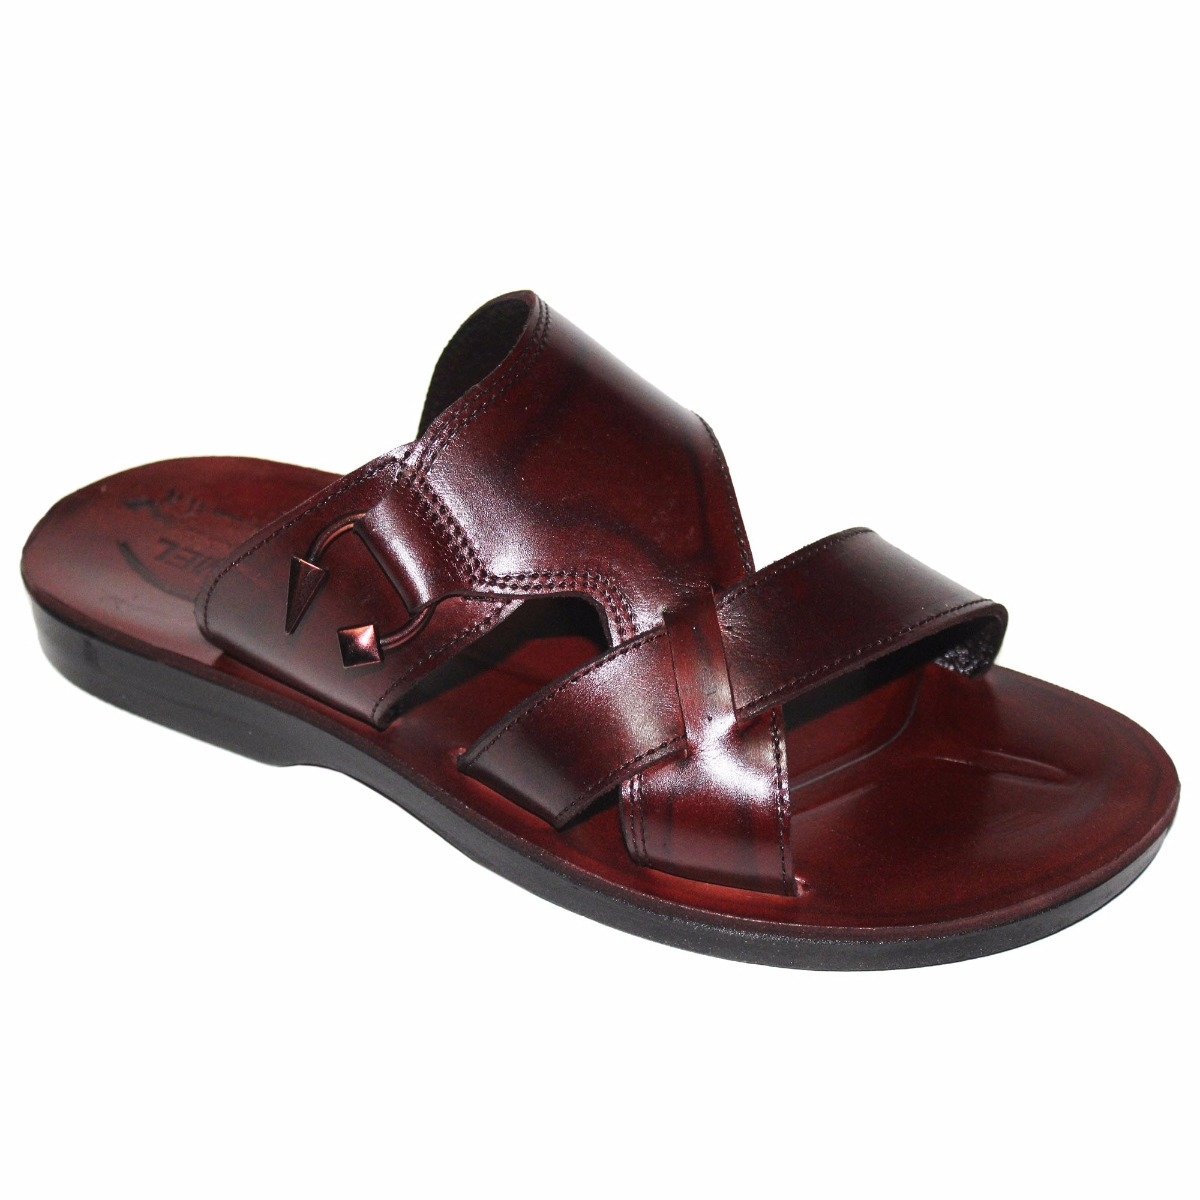 Jairus Handmade Leather Jesus Sandals - 1